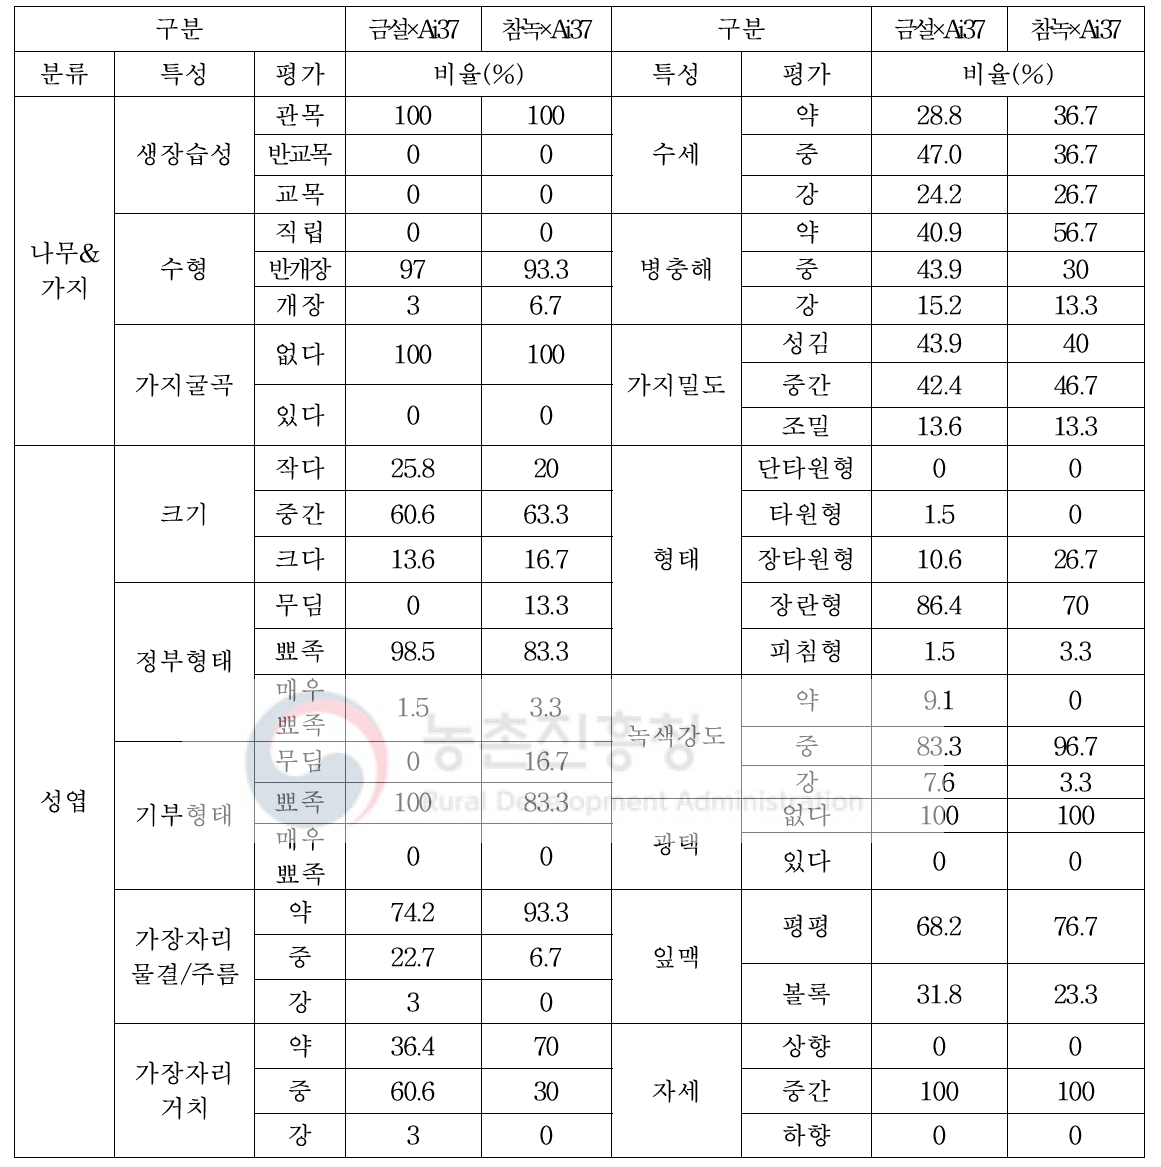 차 핵심분리집단(‘금설, 참녹×Ai37’) 특성 분리비율(2019년 조사)